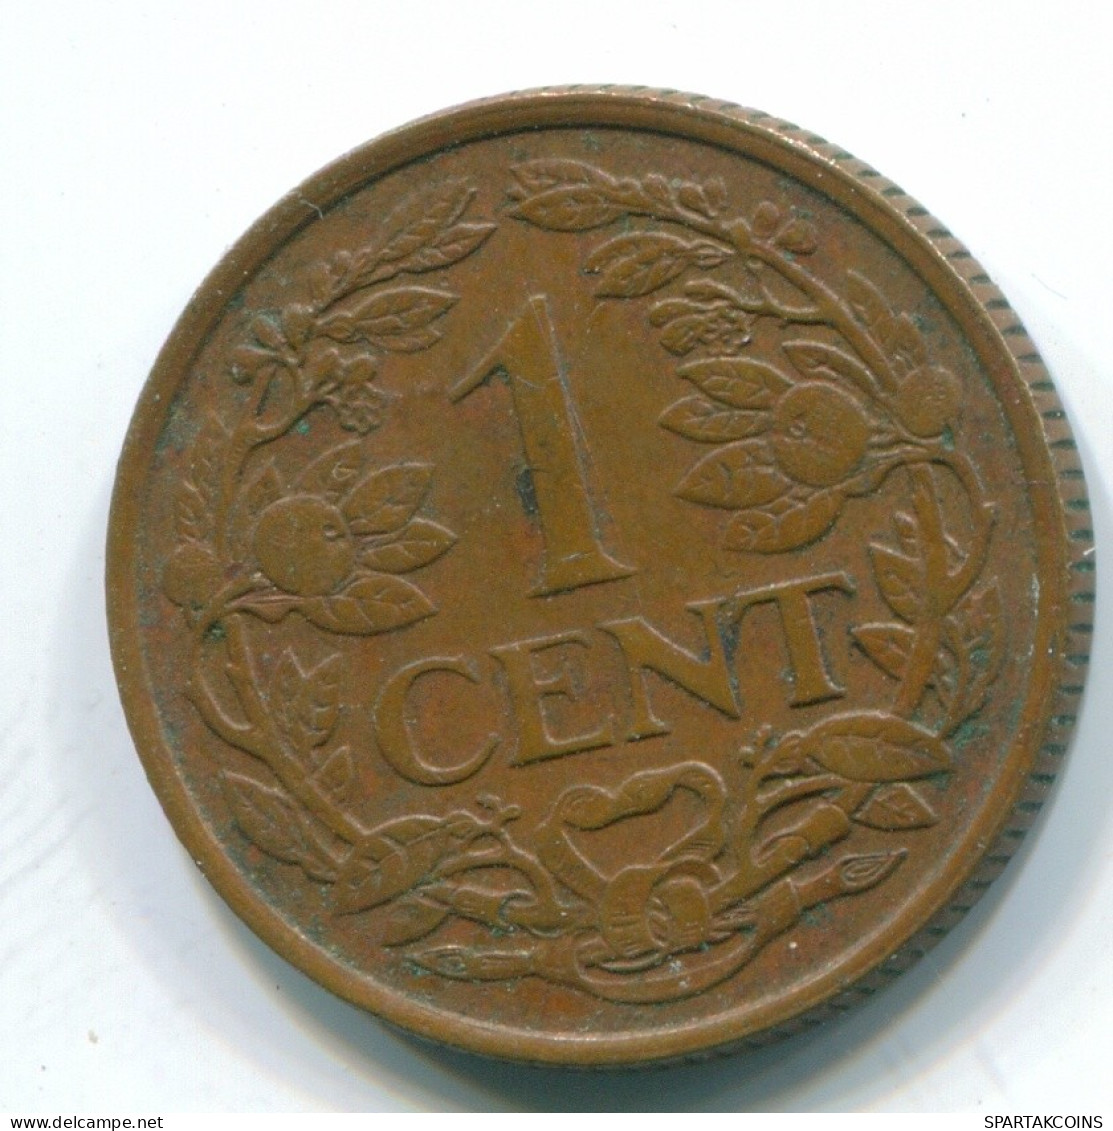 1 CENT 1961 ANTILLAS NEERLANDESAS Bronze Fish Colonial Moneda #S11059.E.A - Antilles Néerlandaises